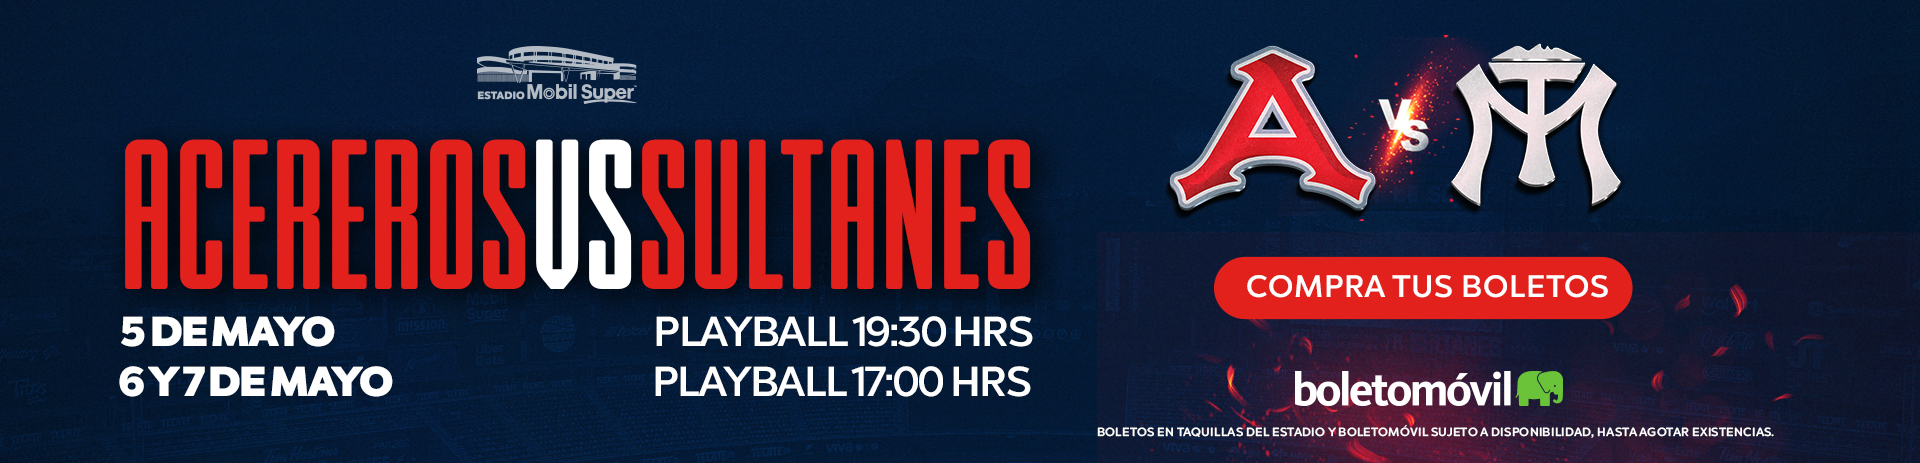 Sultanes - Club de Béisbol Monterrey